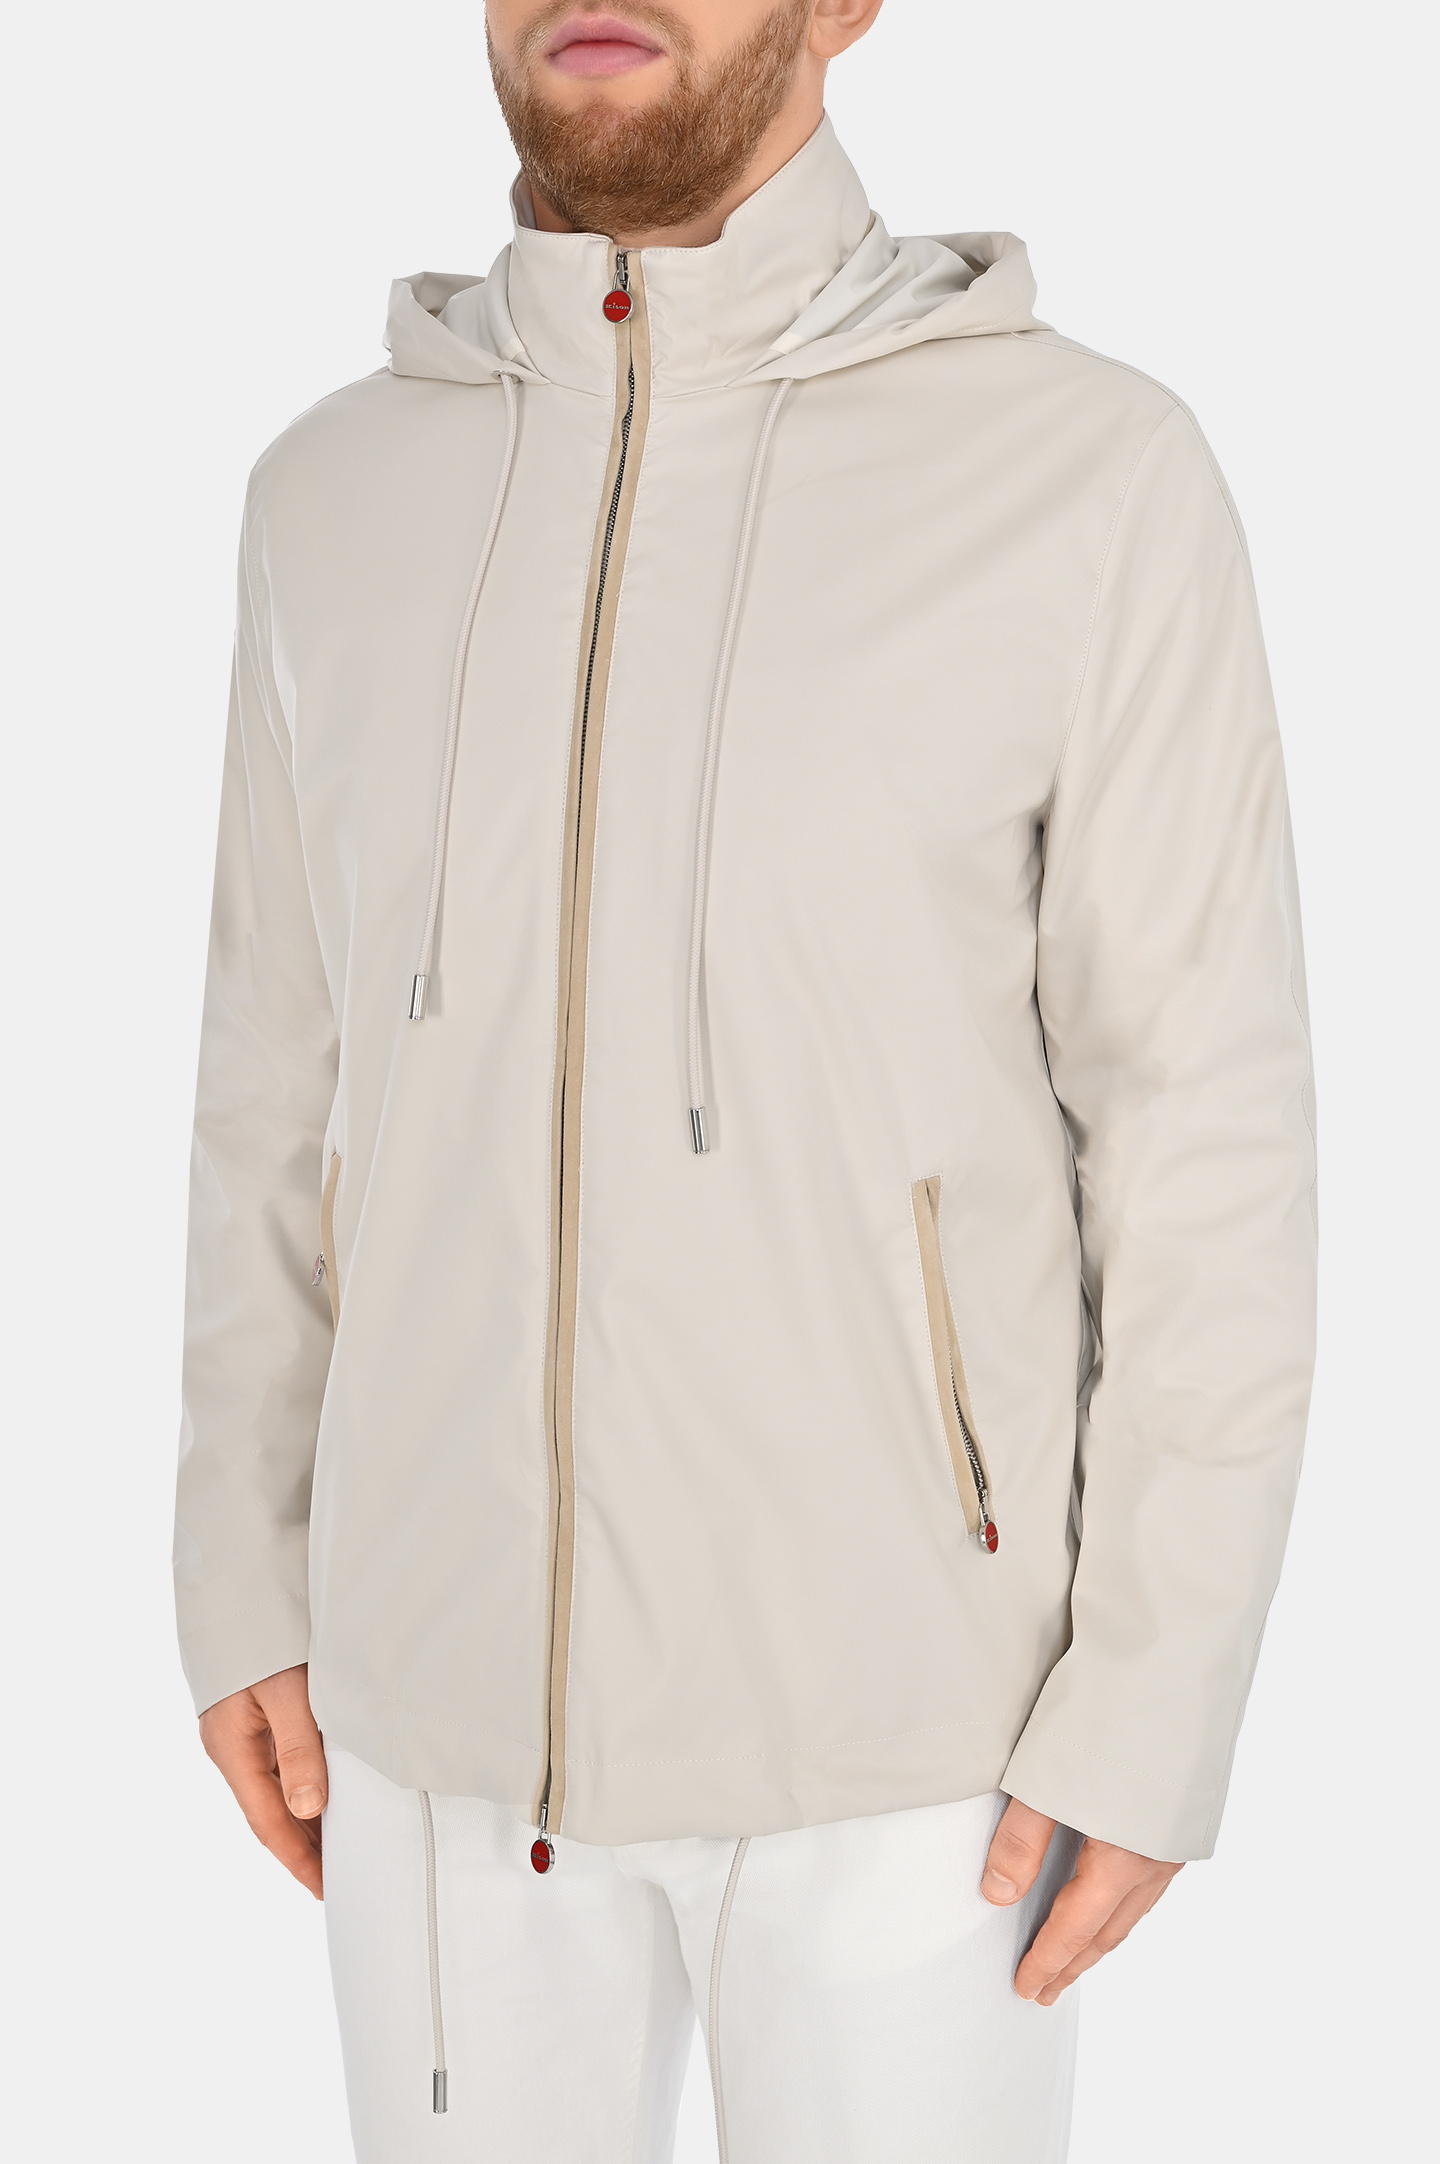 Куртка с капюшоном  KITON UW1780V0835C0, цвет: Молочный, Мужской